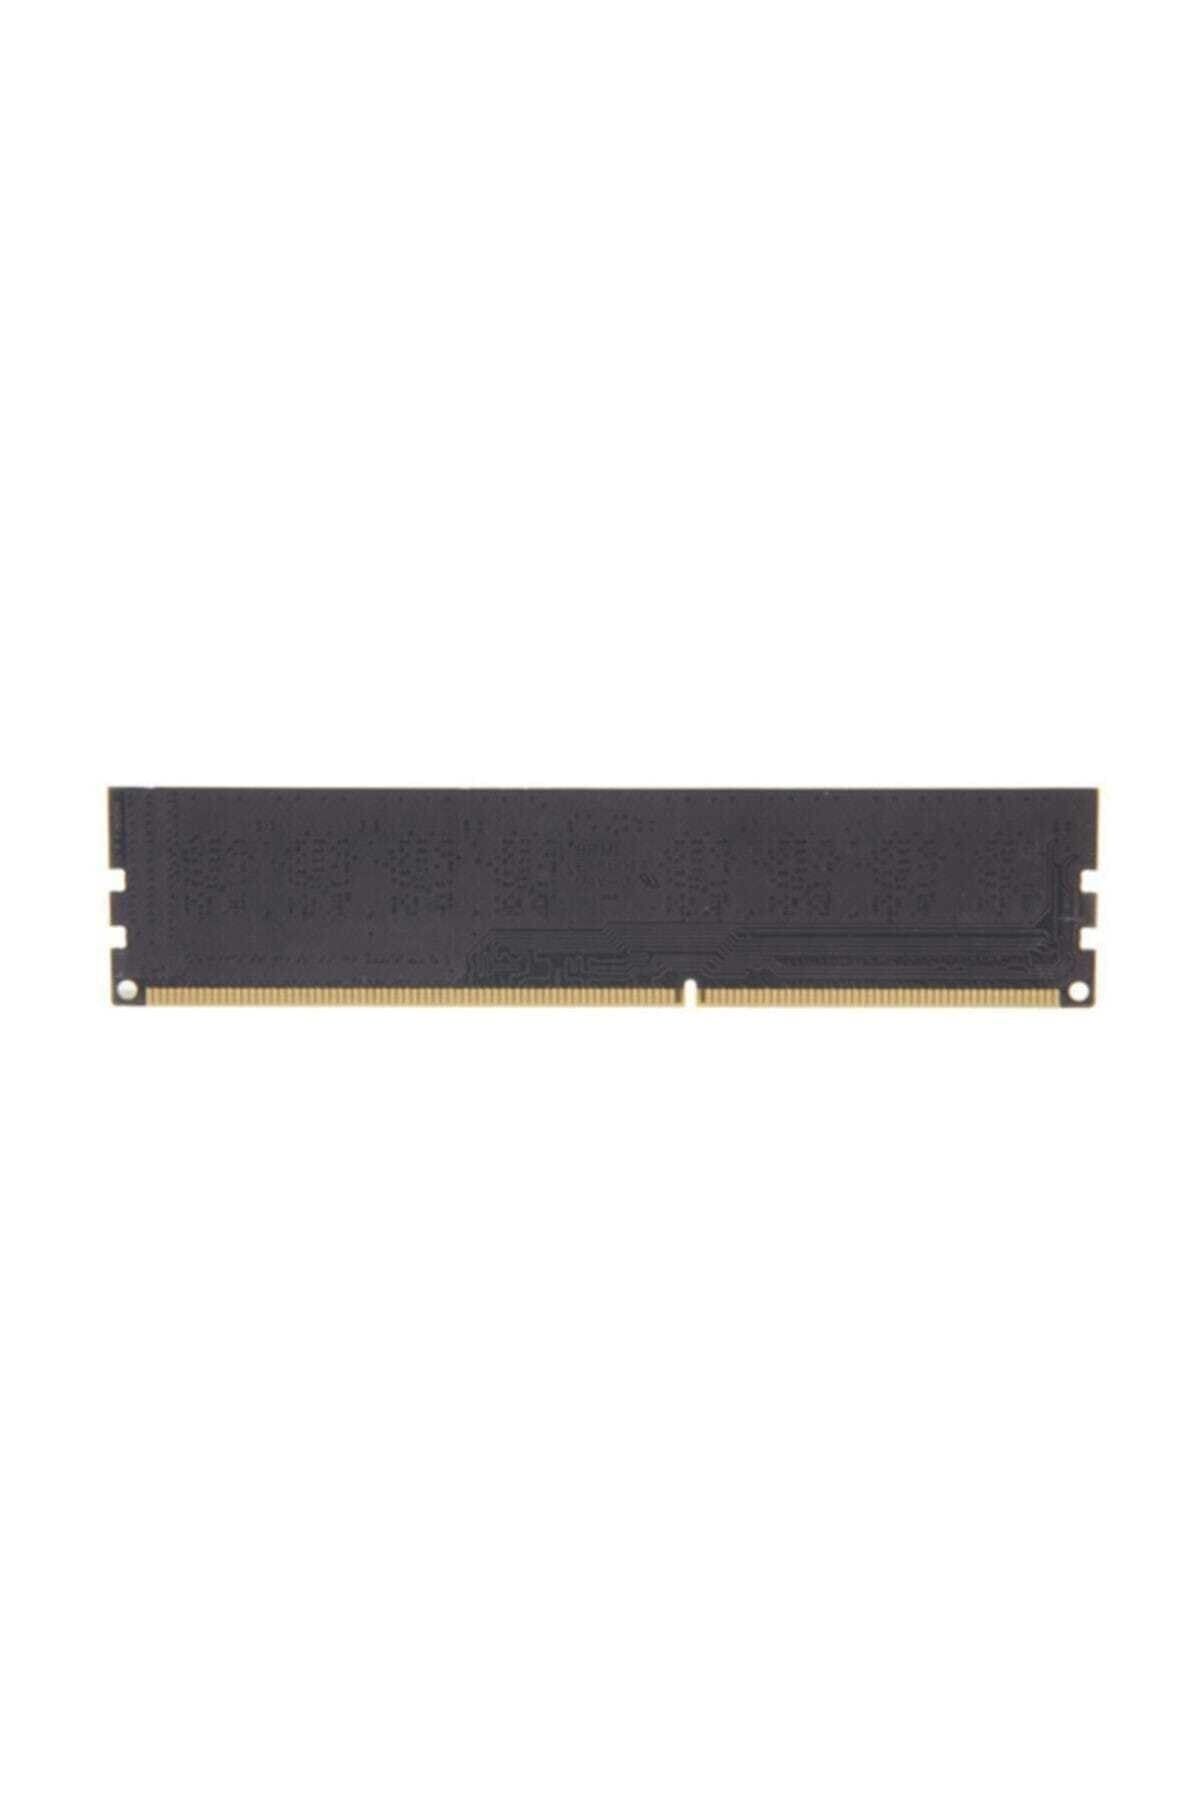 G Skill Value 4GB (1x4GB) DDR3 1333MHz CL9 Ram (F3-1333C9S-4GNS)